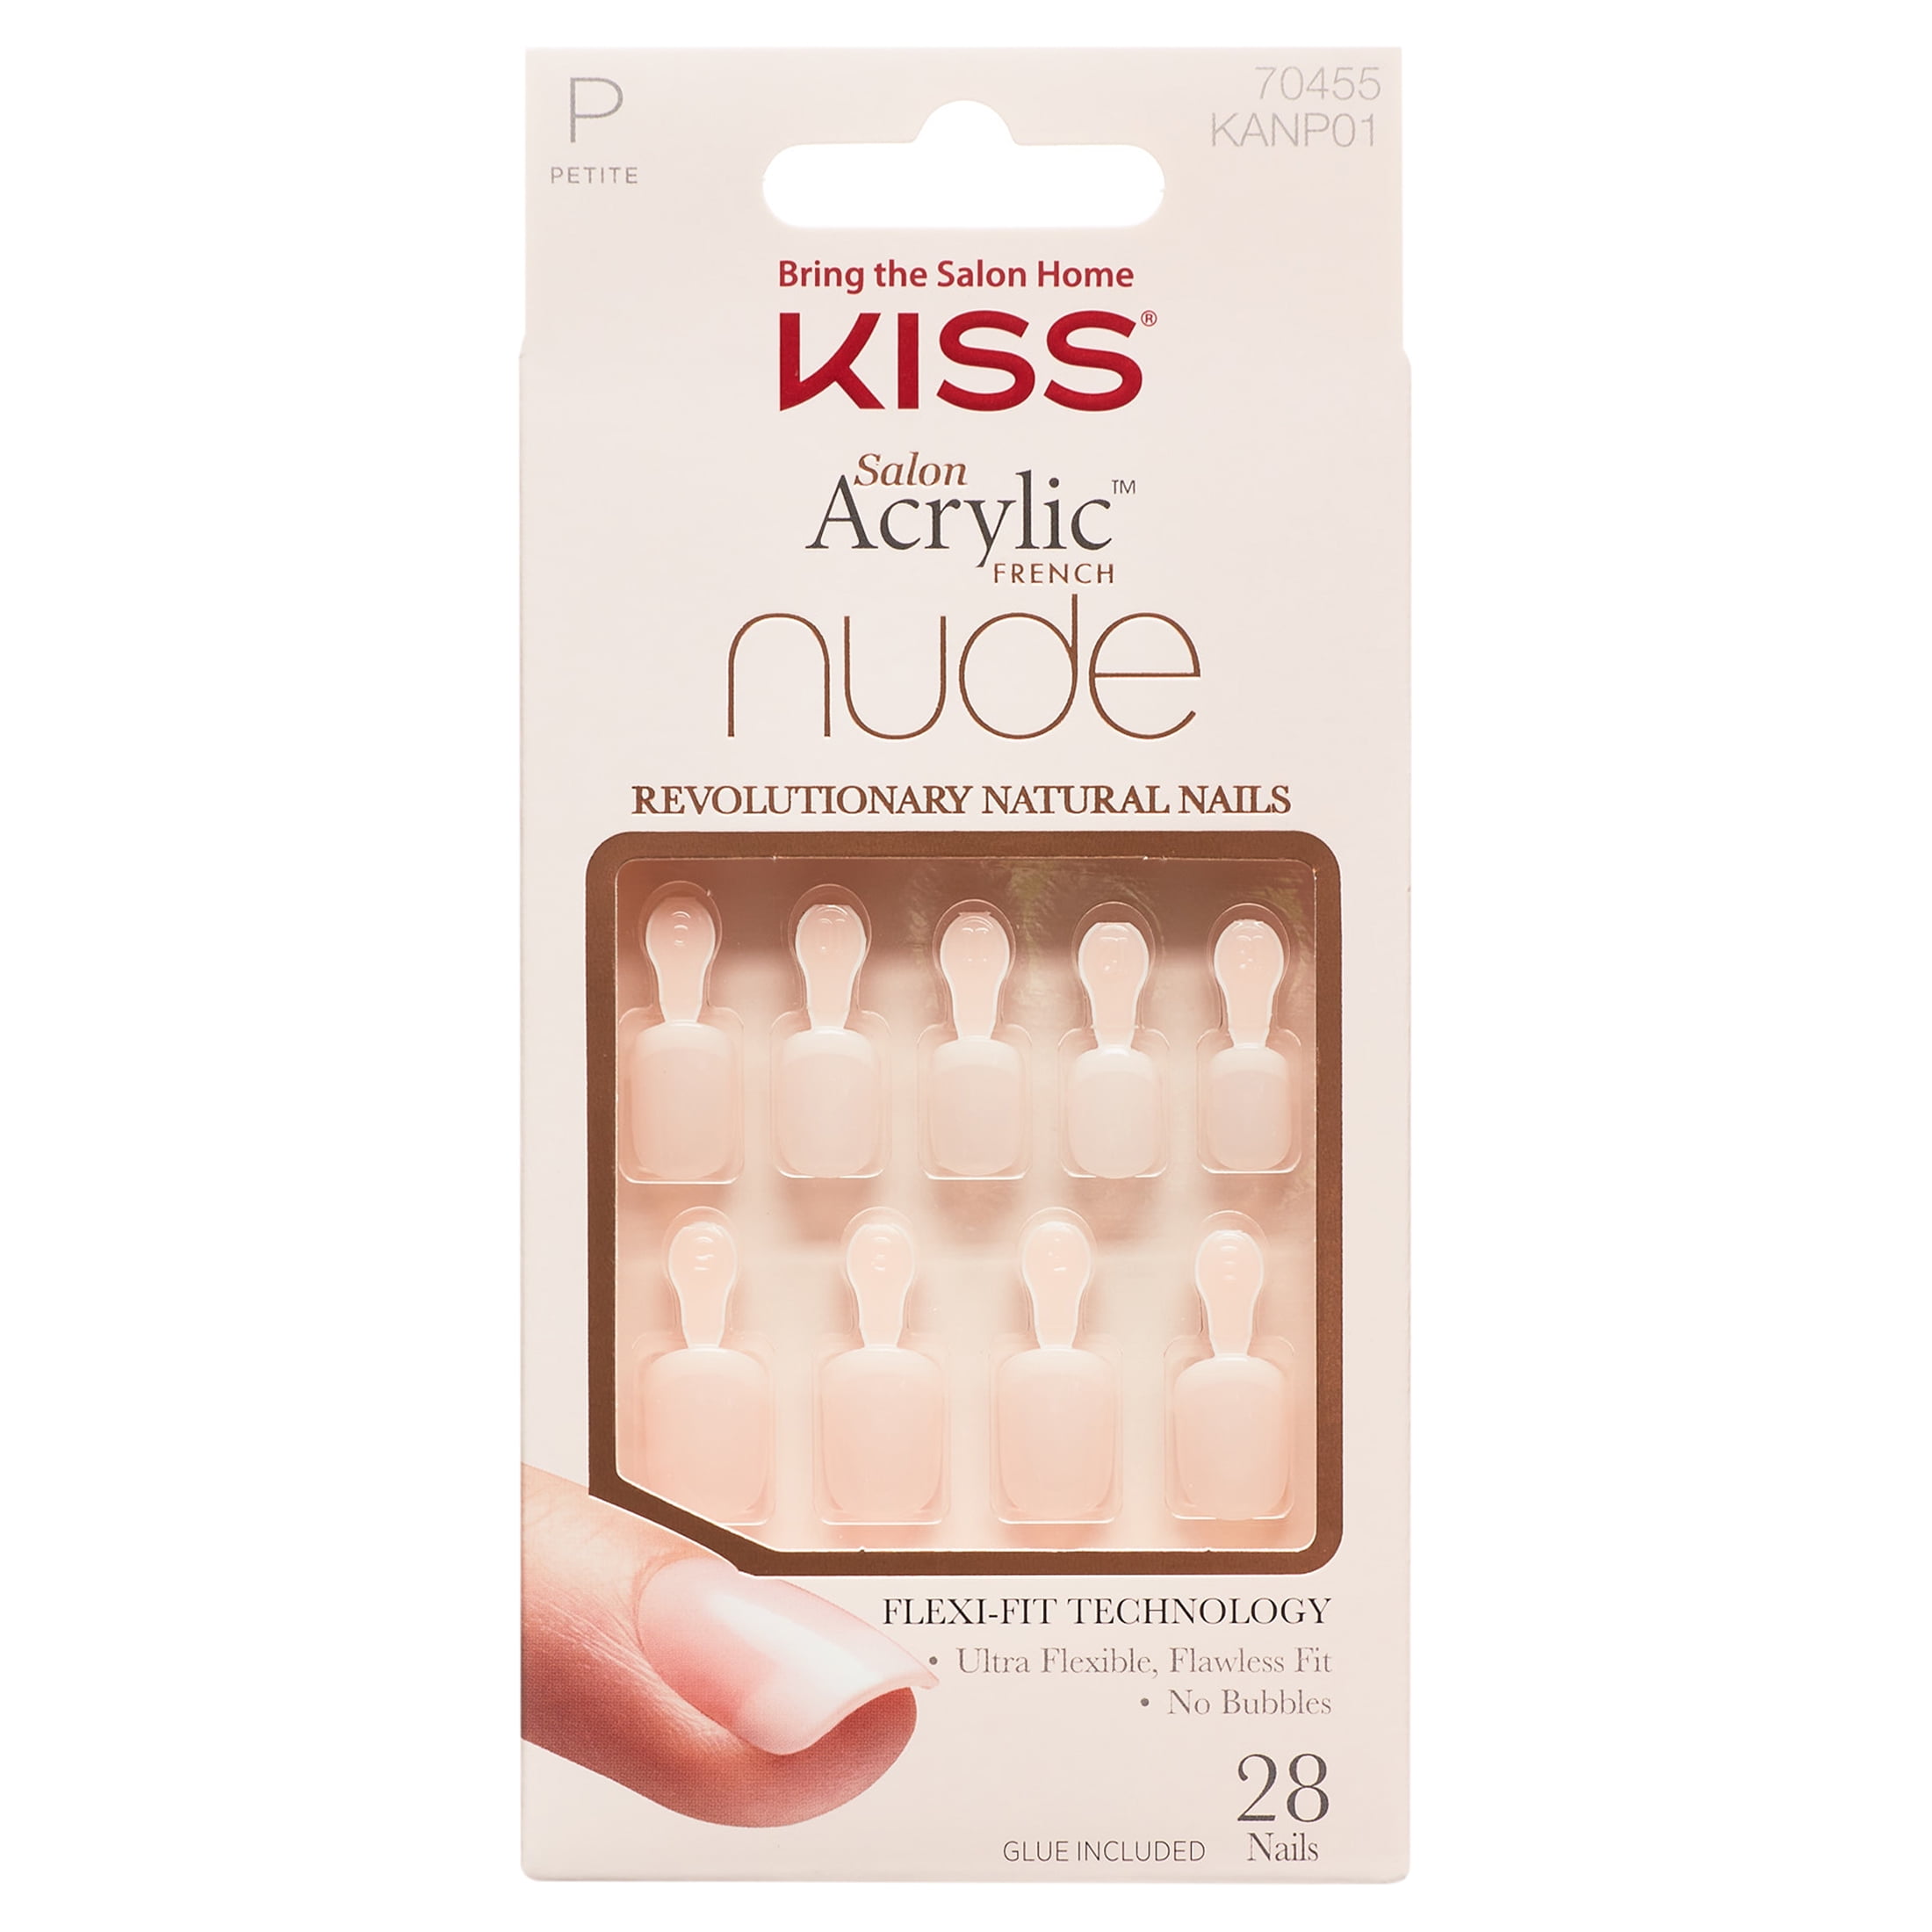 KISS Salon Acrylic Nude French Press On Nails Light Pink Petite Square Shape 31 Ct f8ac5048 a367 4192 b807 c98068095b4d.db9f1c37692f9cc2f6f24b010a39b214